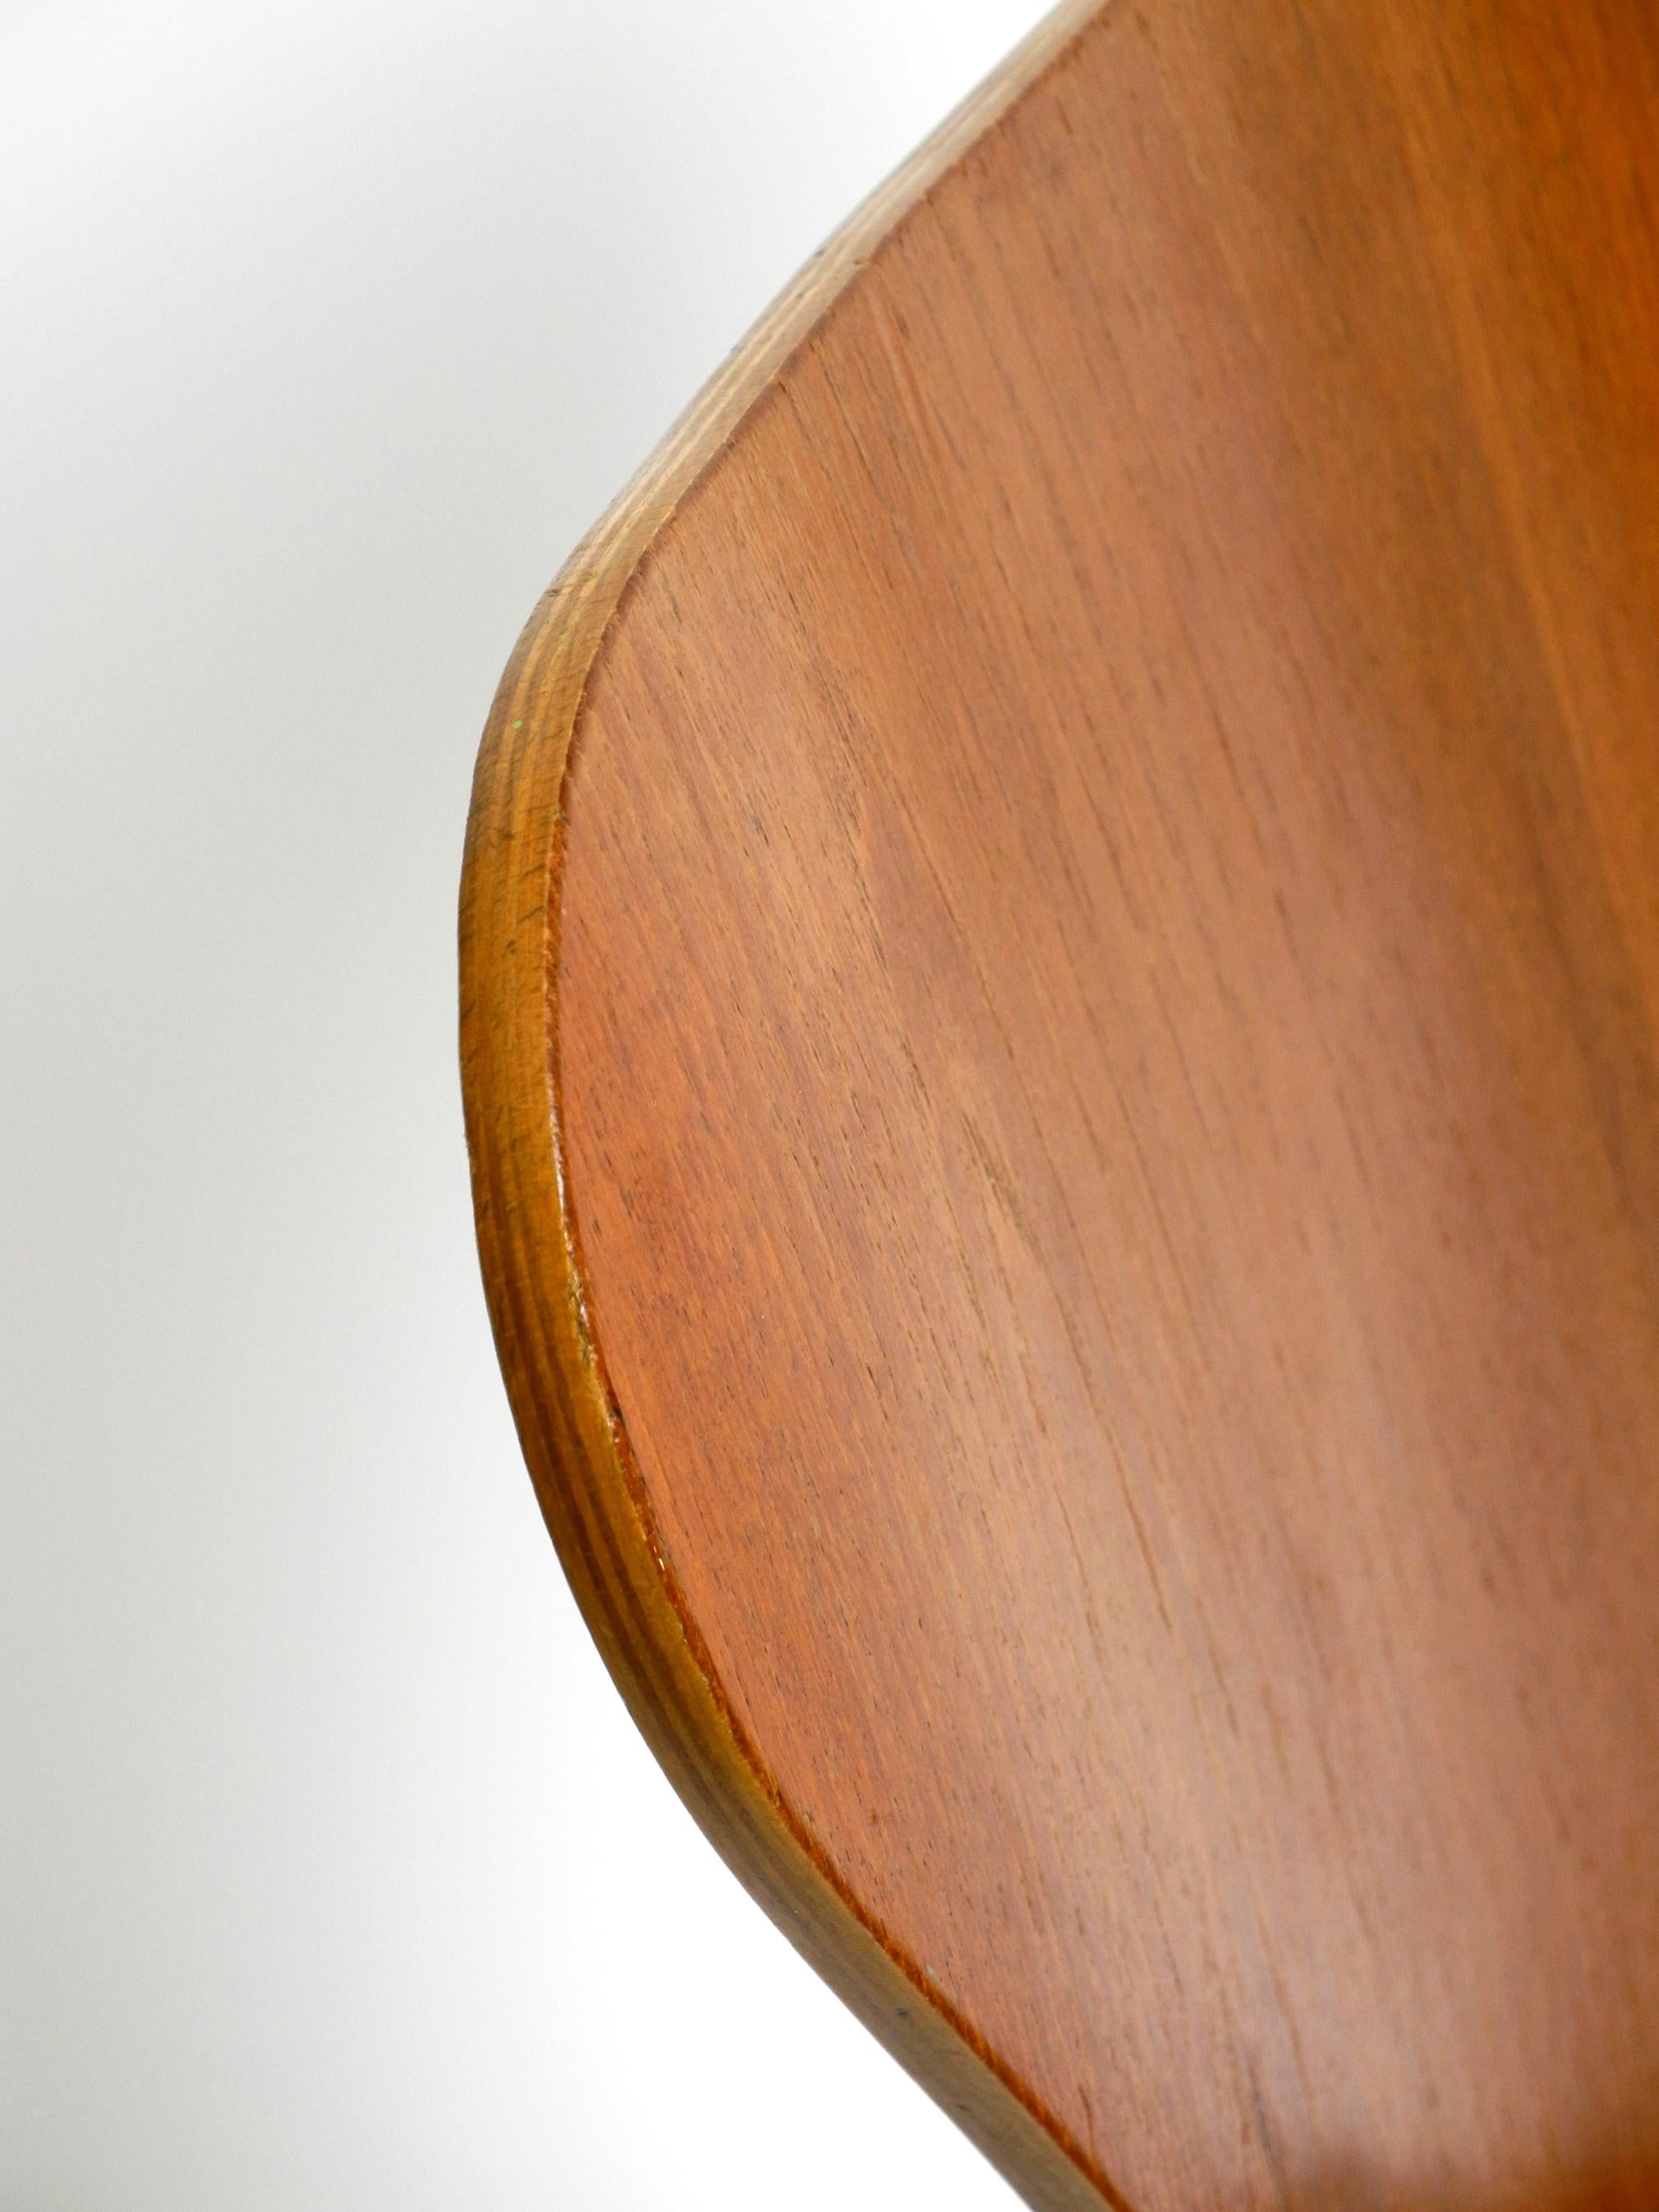 Original Arne Jacobsen Teak Chair from 1972 Mod. 3107 6